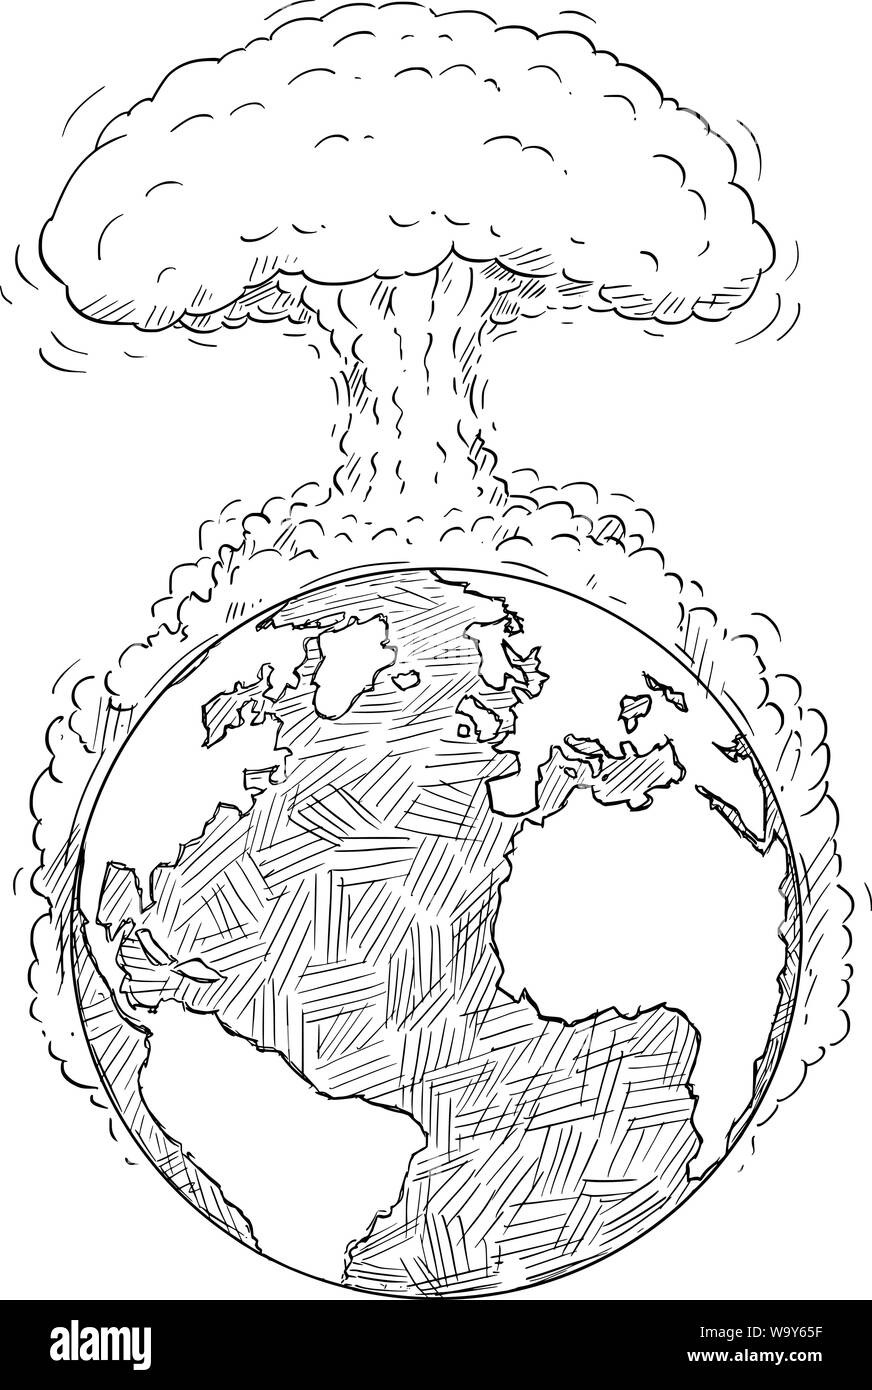 Vettore di disegno del fumetto o illustrazione del pianeta Terra o mondo distrutto grande esplosione nucleare o guerra globale o di conflitto. Concetto di apocalisse. Illustrazione Vettoriale